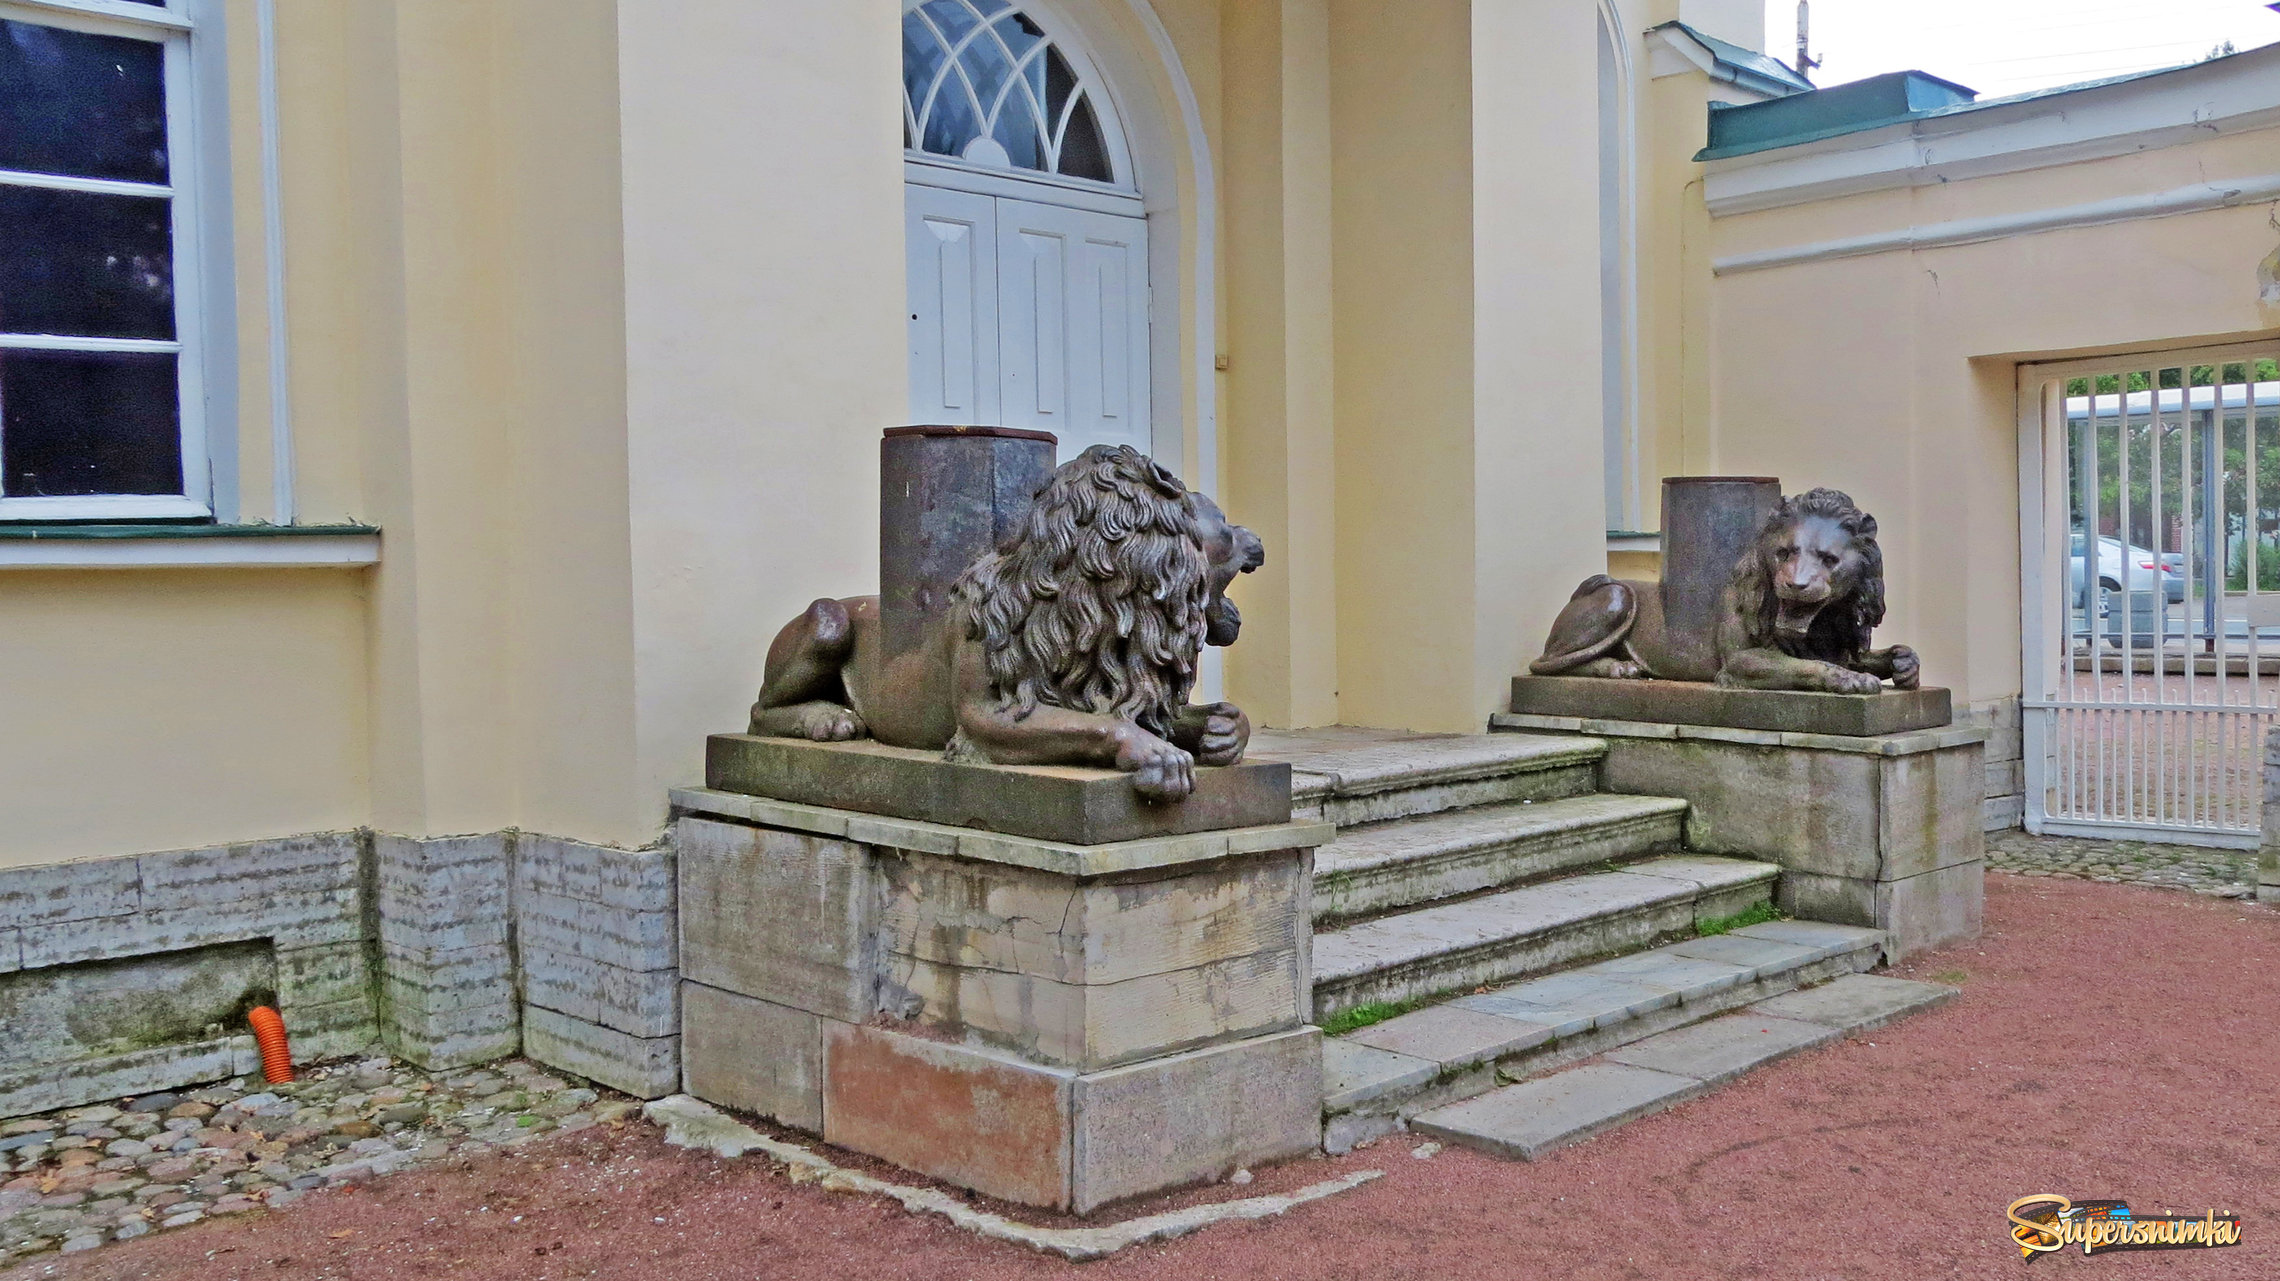 В парке Александрия. Караульный дом со львами